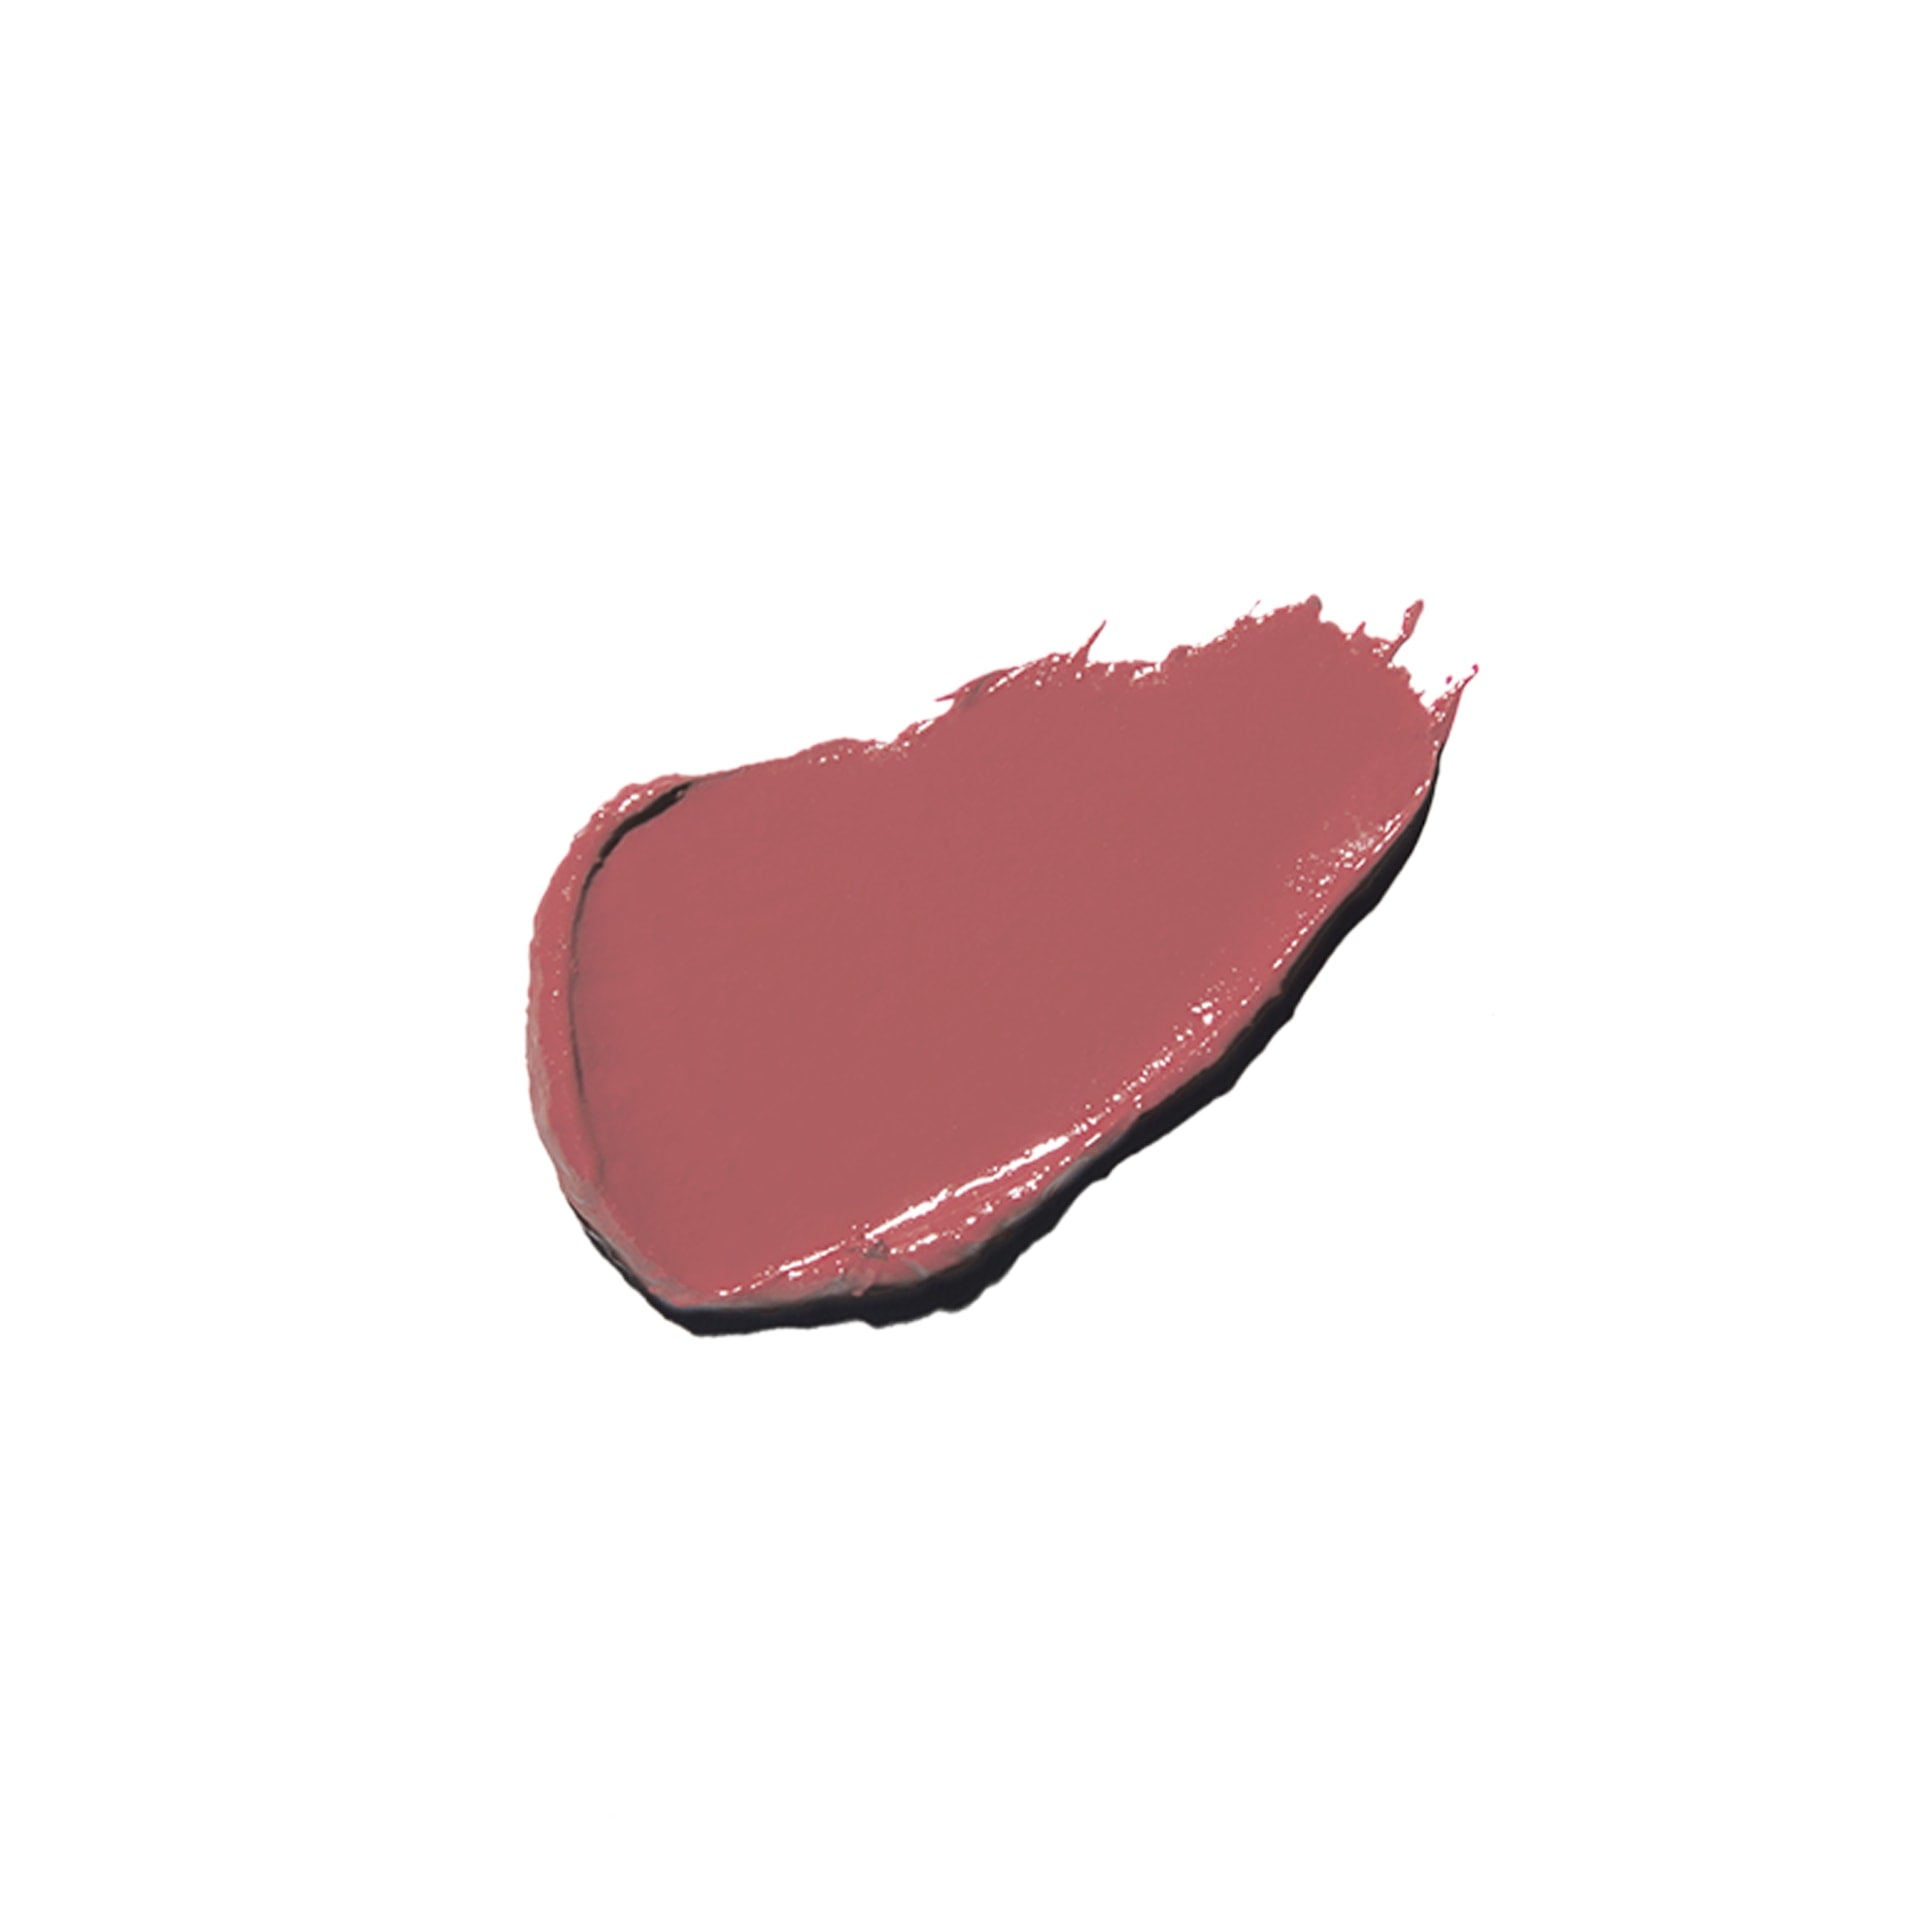 100% PURE Fruit Pigmented Lip Glaze rose petal